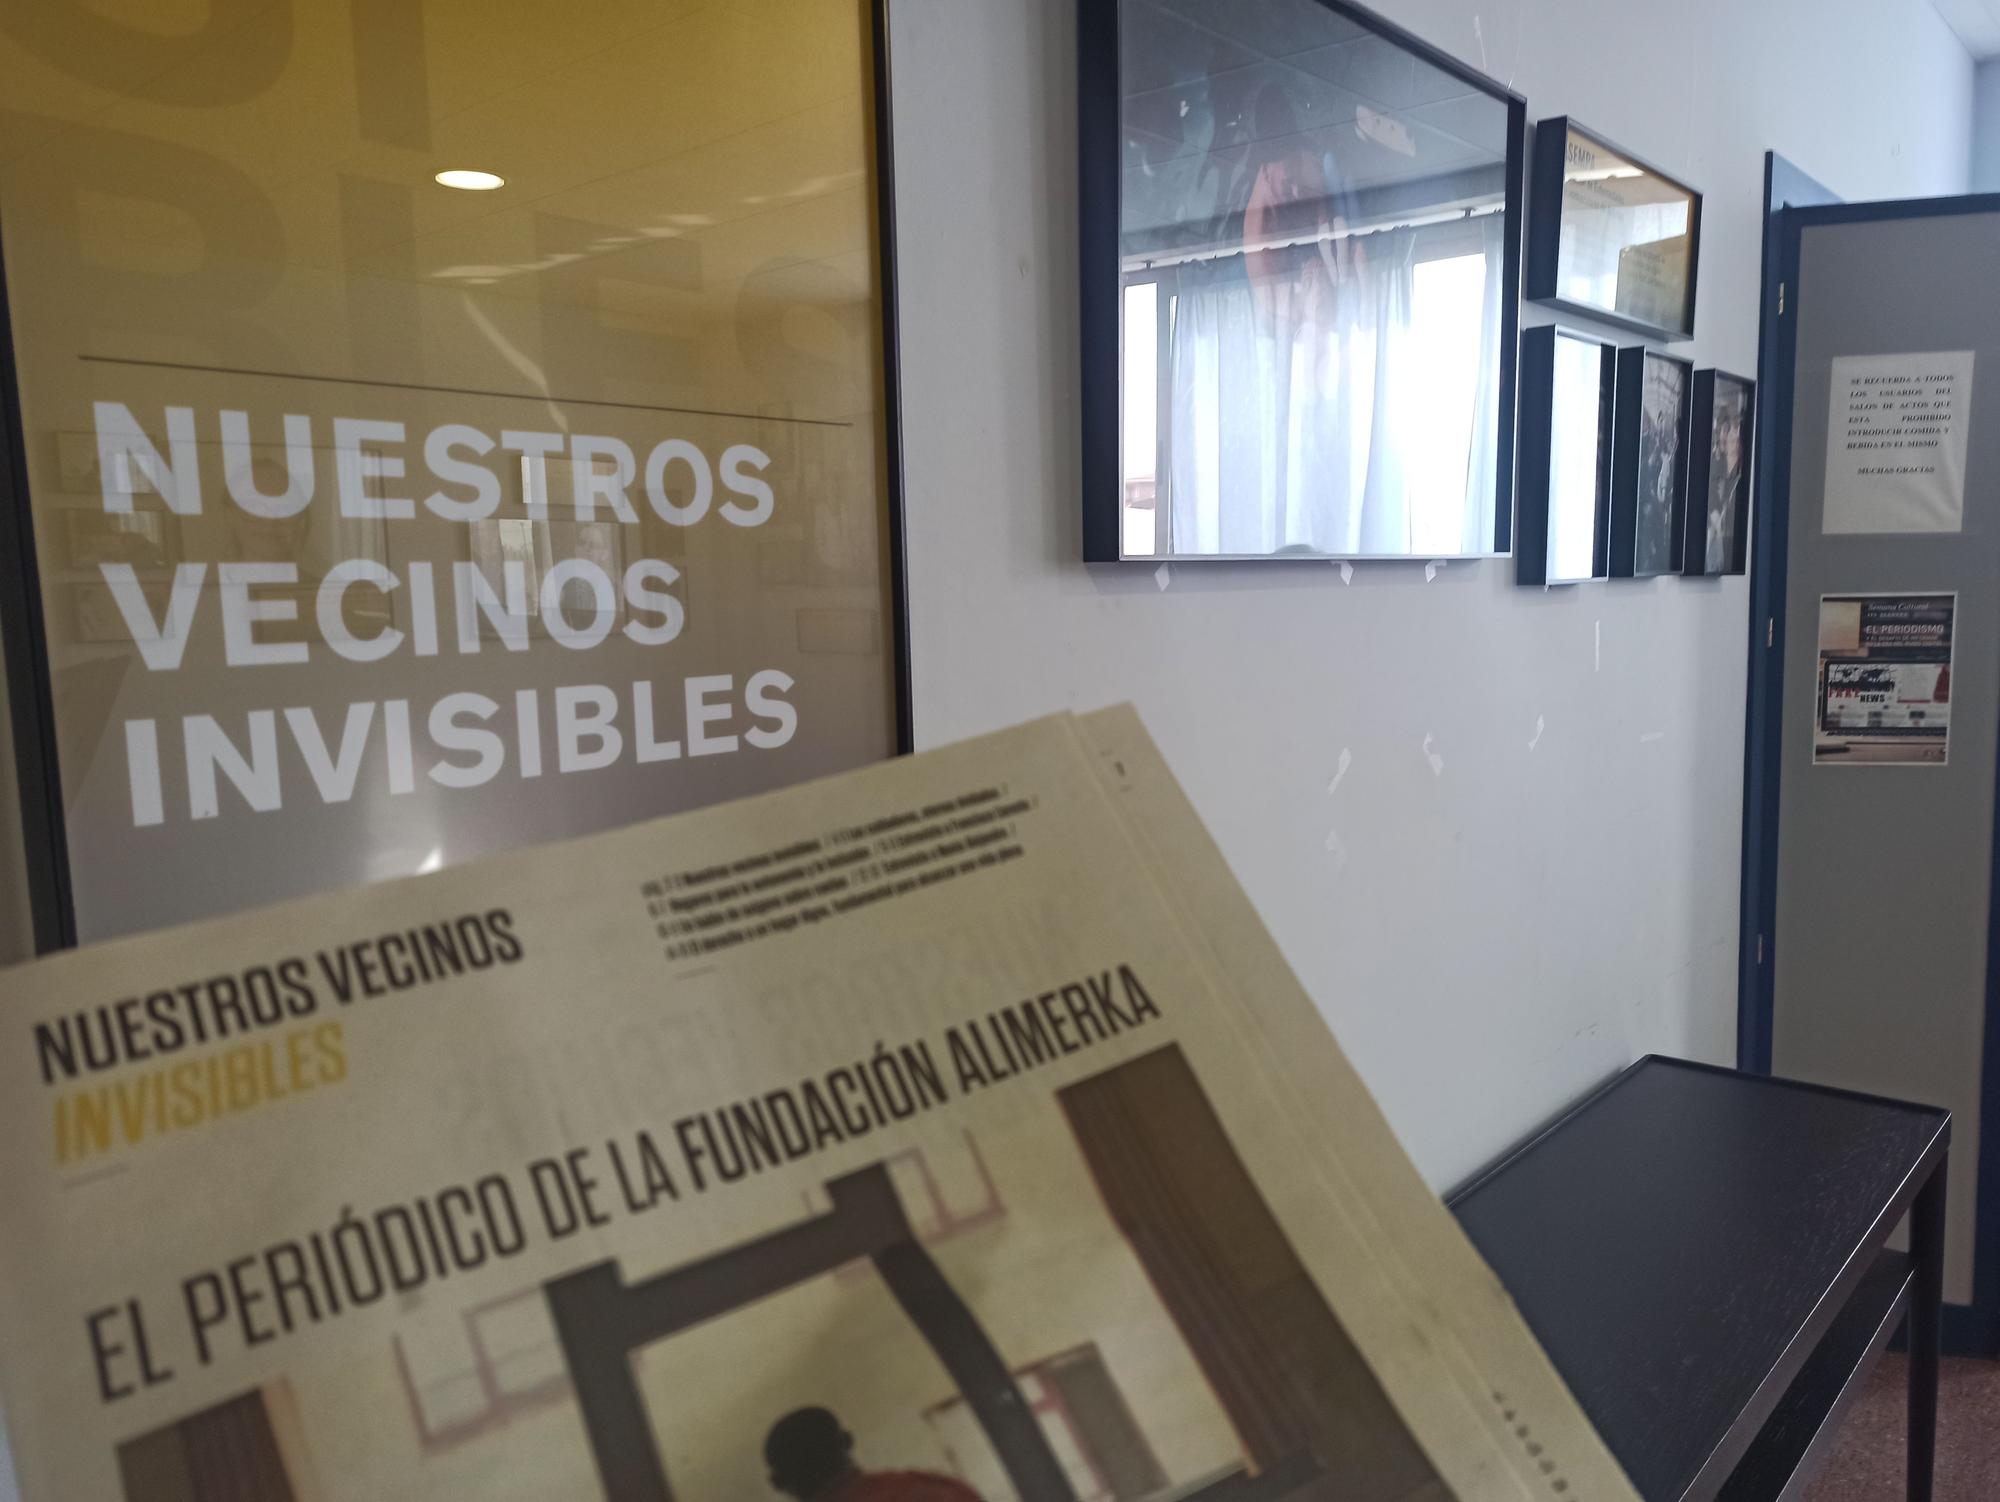 La exposición "Nuestros vecinos invisibles" sorprende a los alumnos del instituto de Llanera: "Es inspiradora"